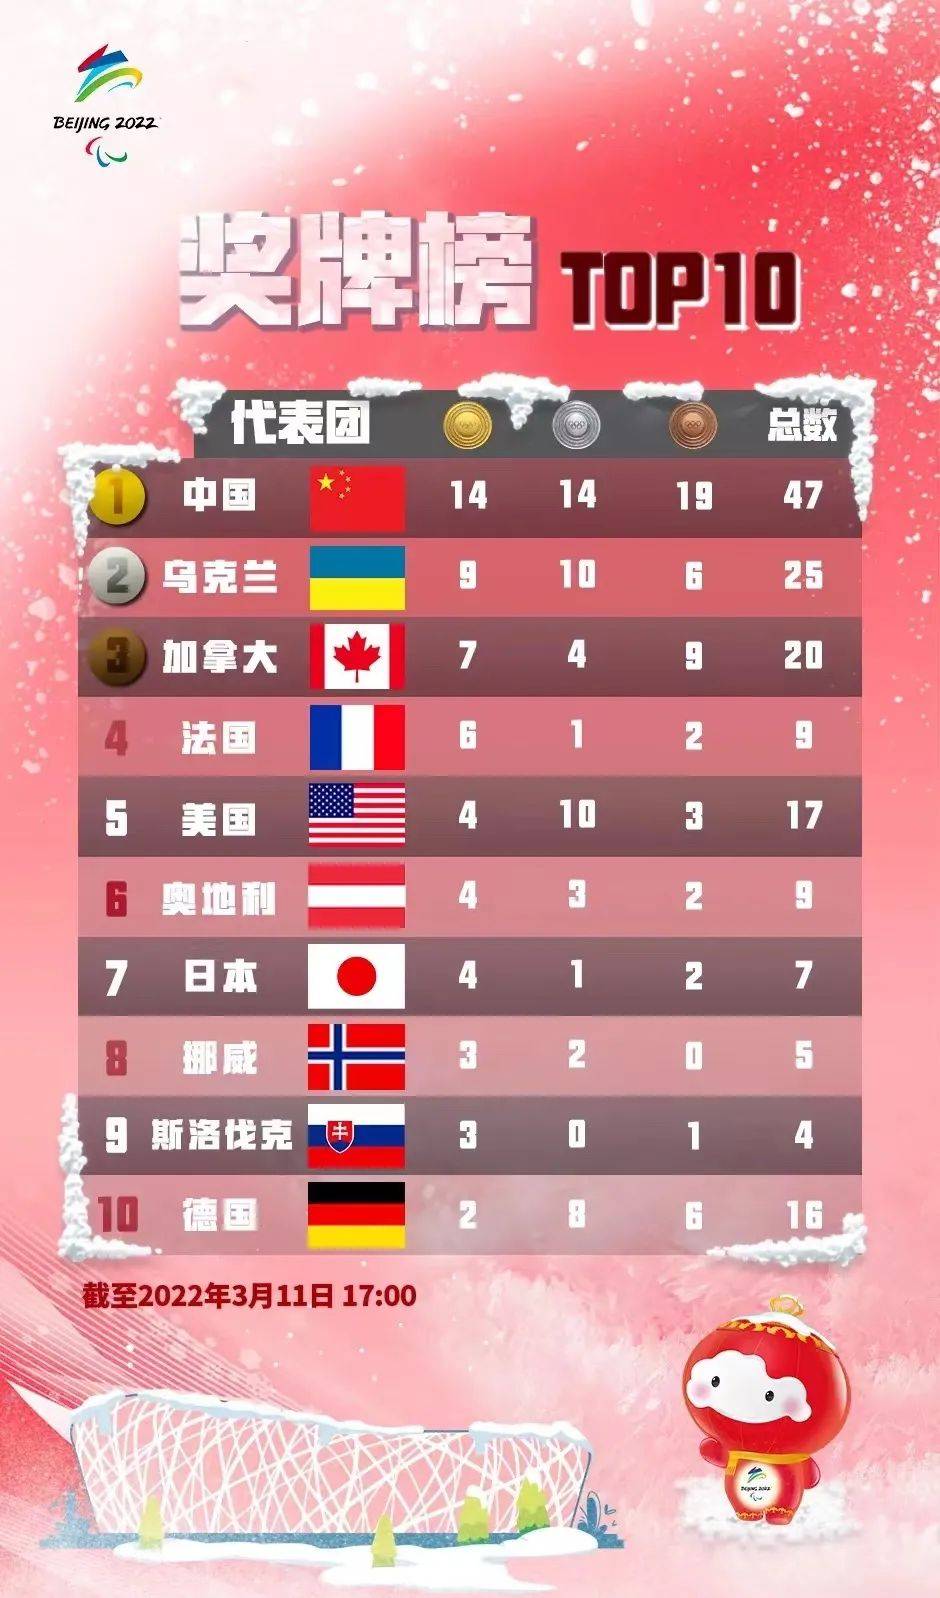 历届残奥会奖牌榜图片